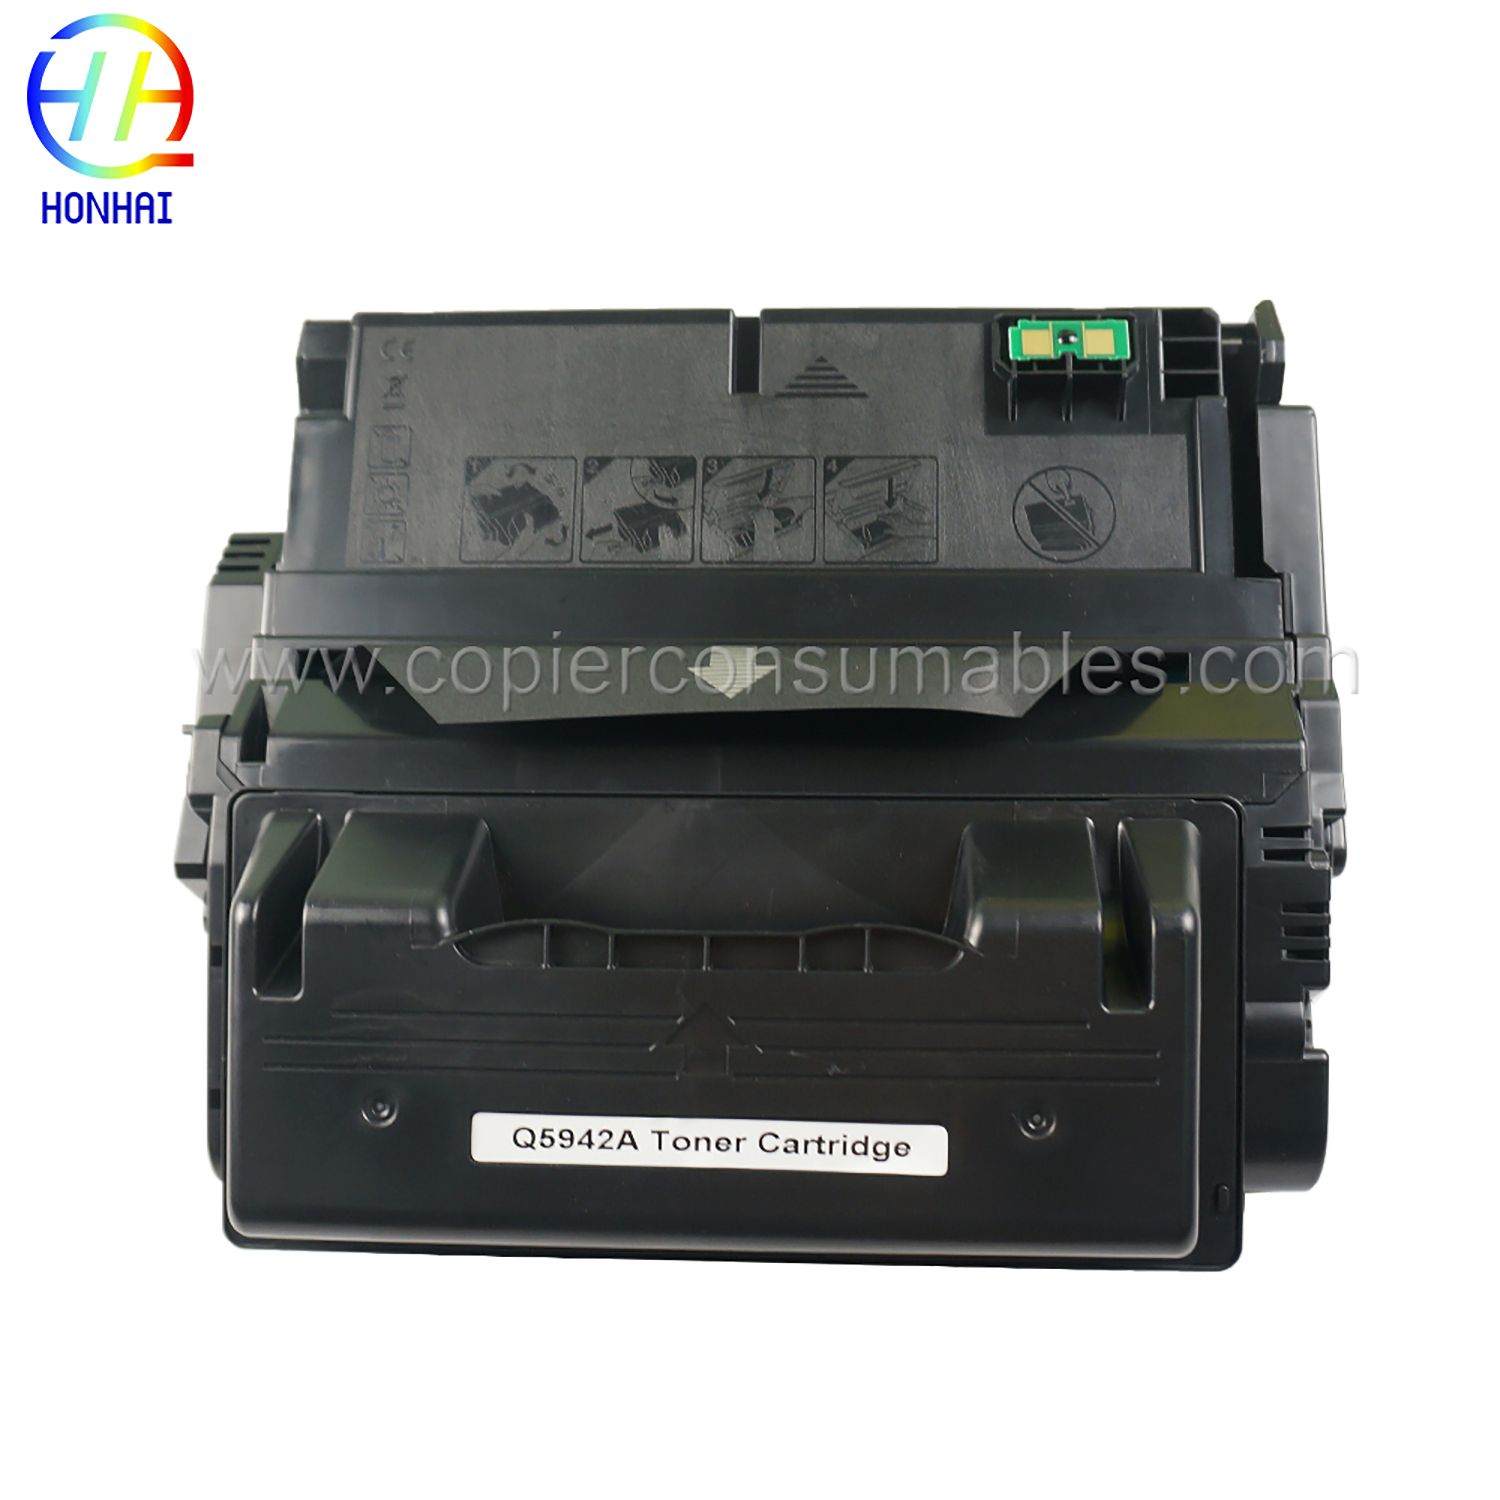 Toner-kartutxoa HP LaserJet 4240n, 4250, 4350 Q5942A 42A (3) 拷贝